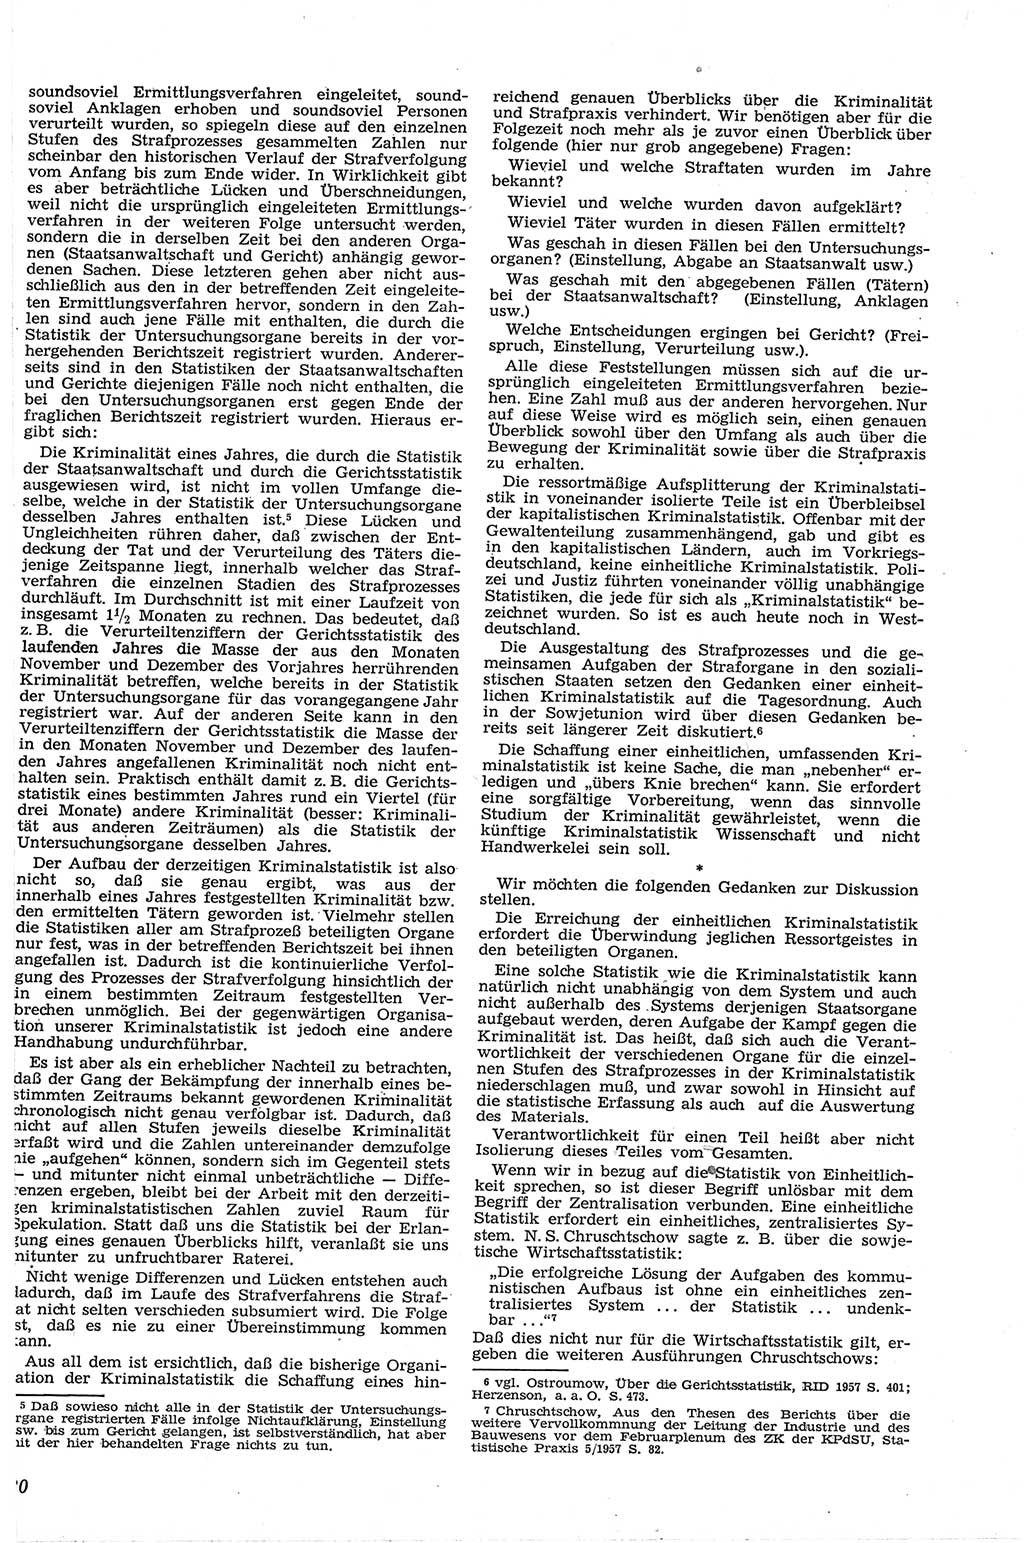 Neue Justiz (NJ), Zeitschrift für Recht und Rechtswissenschaft [Deutsche Demokratische Republik (DDR)], 13. Jahrgang 1959, Seite 20 (NJ DDR 1959, S. 20)